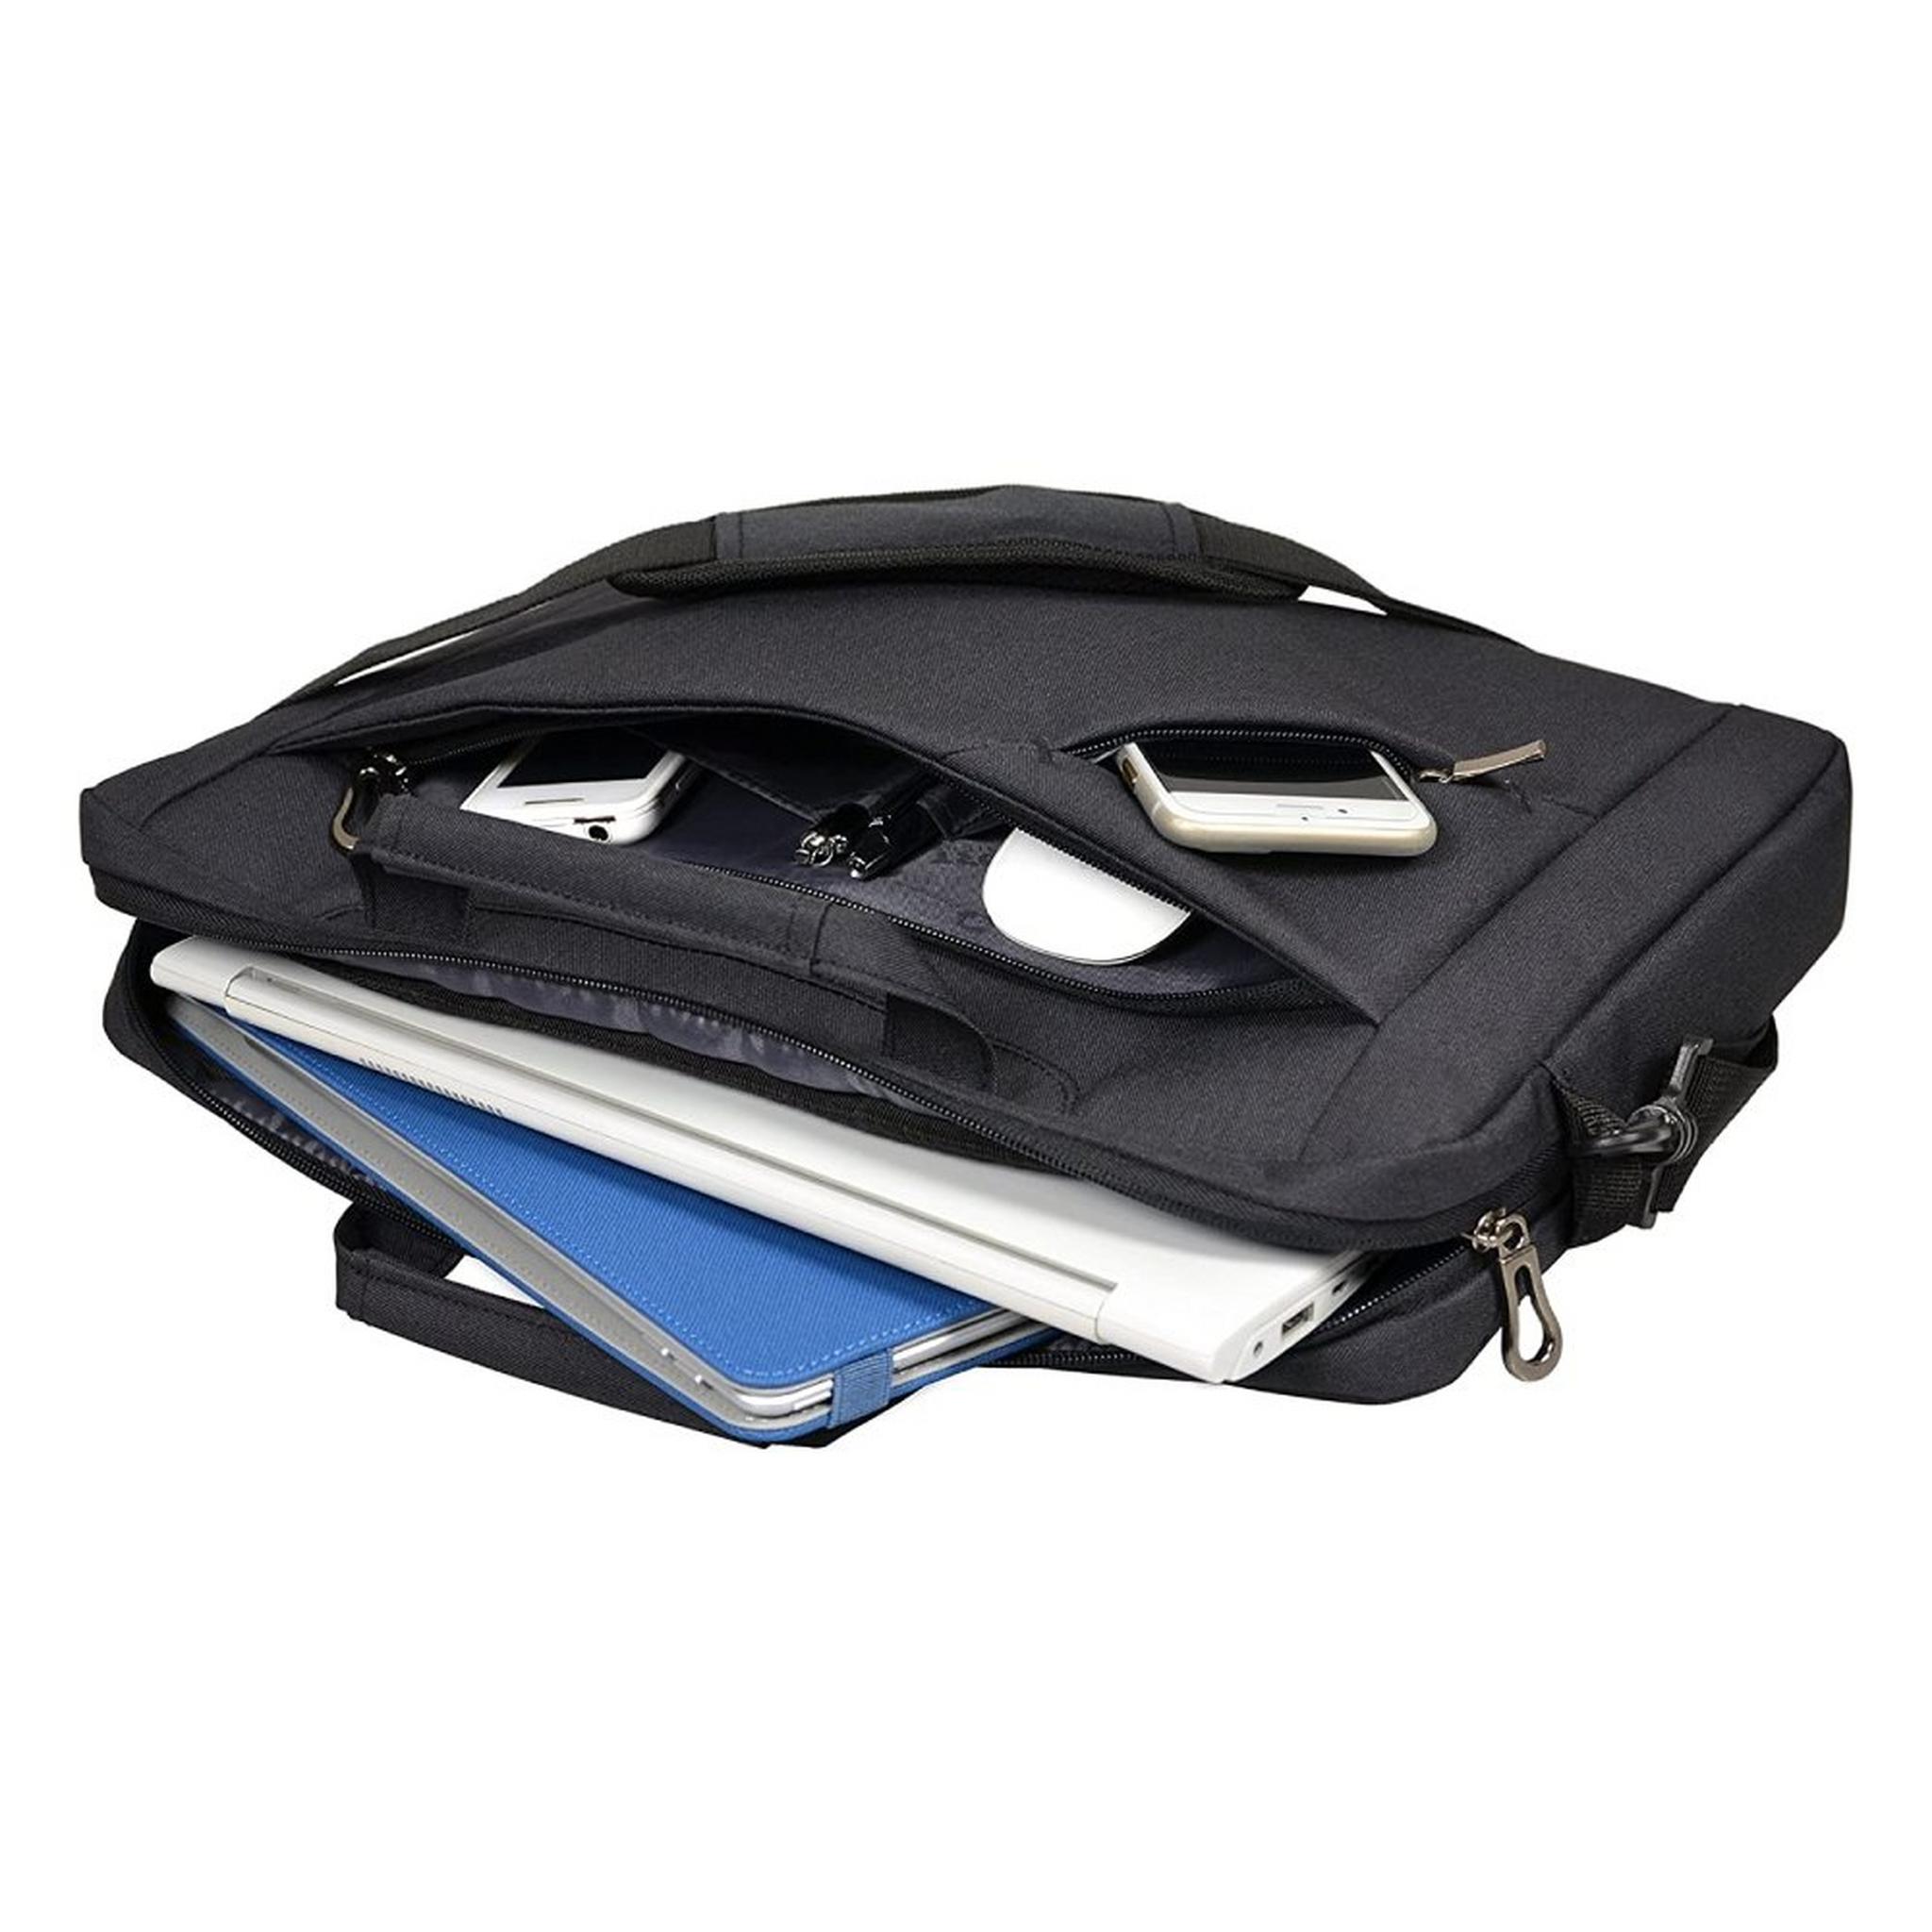 Port Designs Sydney Toploading laptop case 15.6 inch | Black